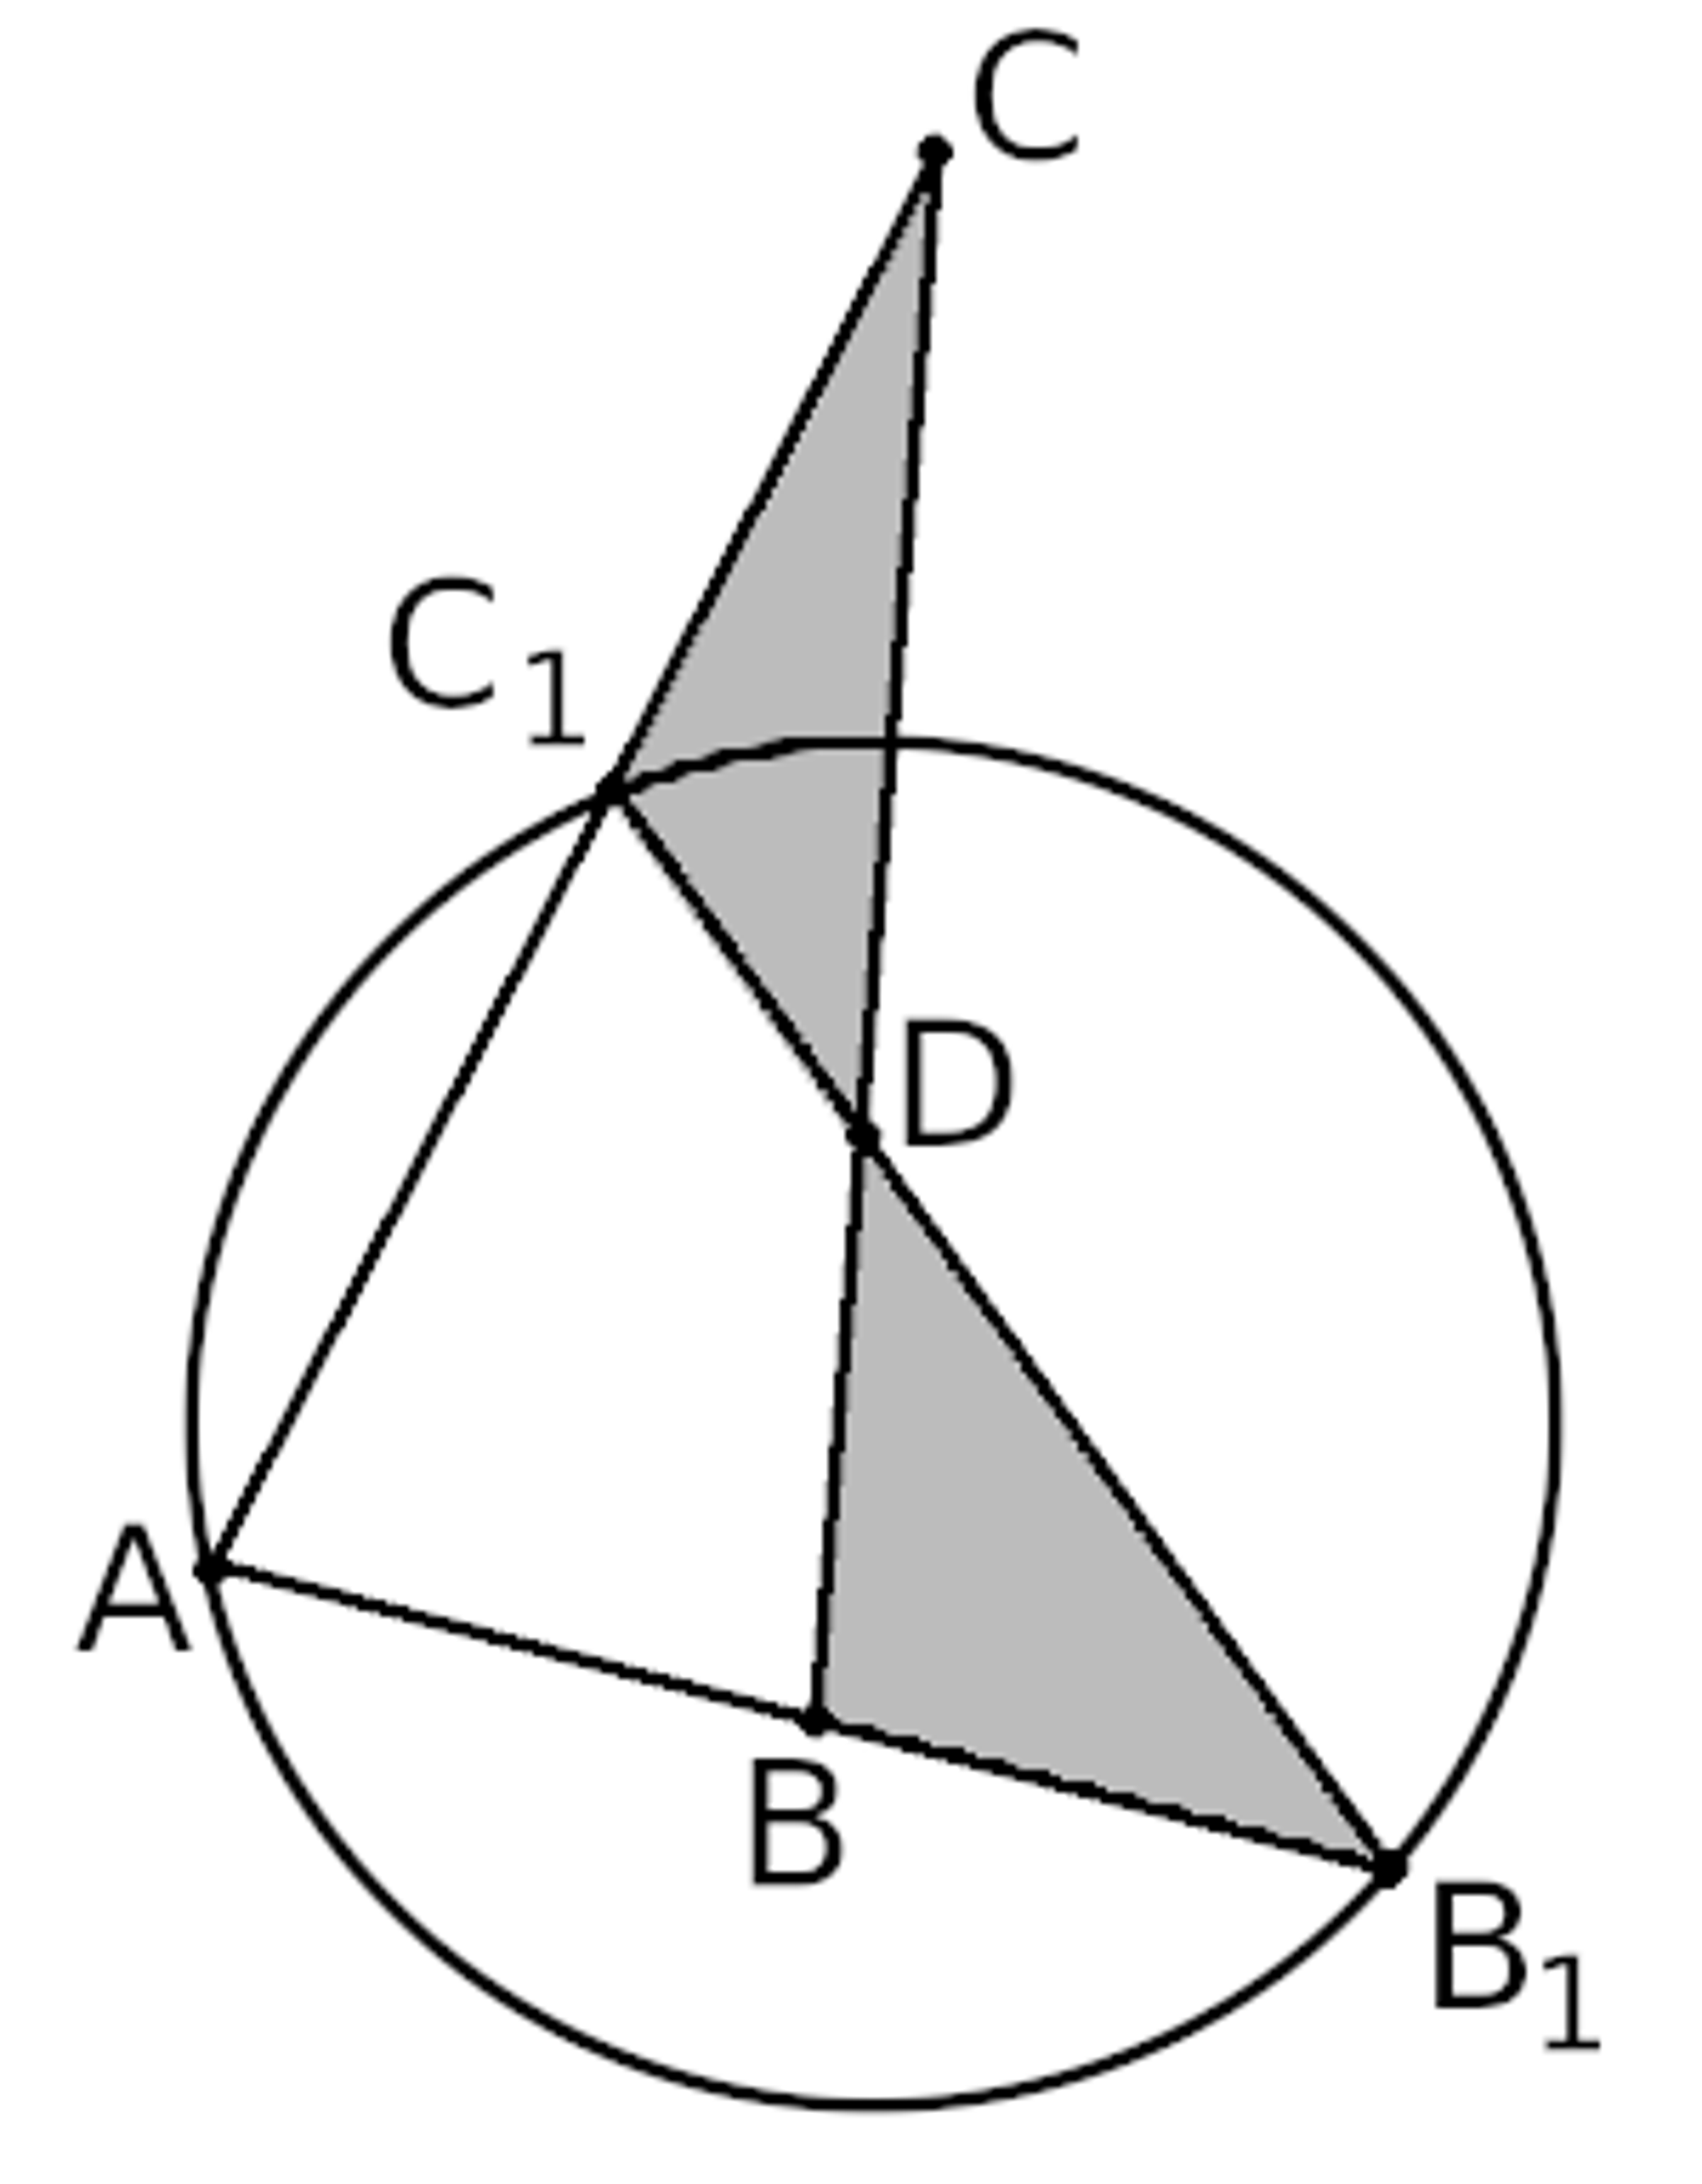 KOnstrukcja trójkąta wpisanego w koło zachowującego jeden kąt oraz pole powierzchni zadanego trójkąta